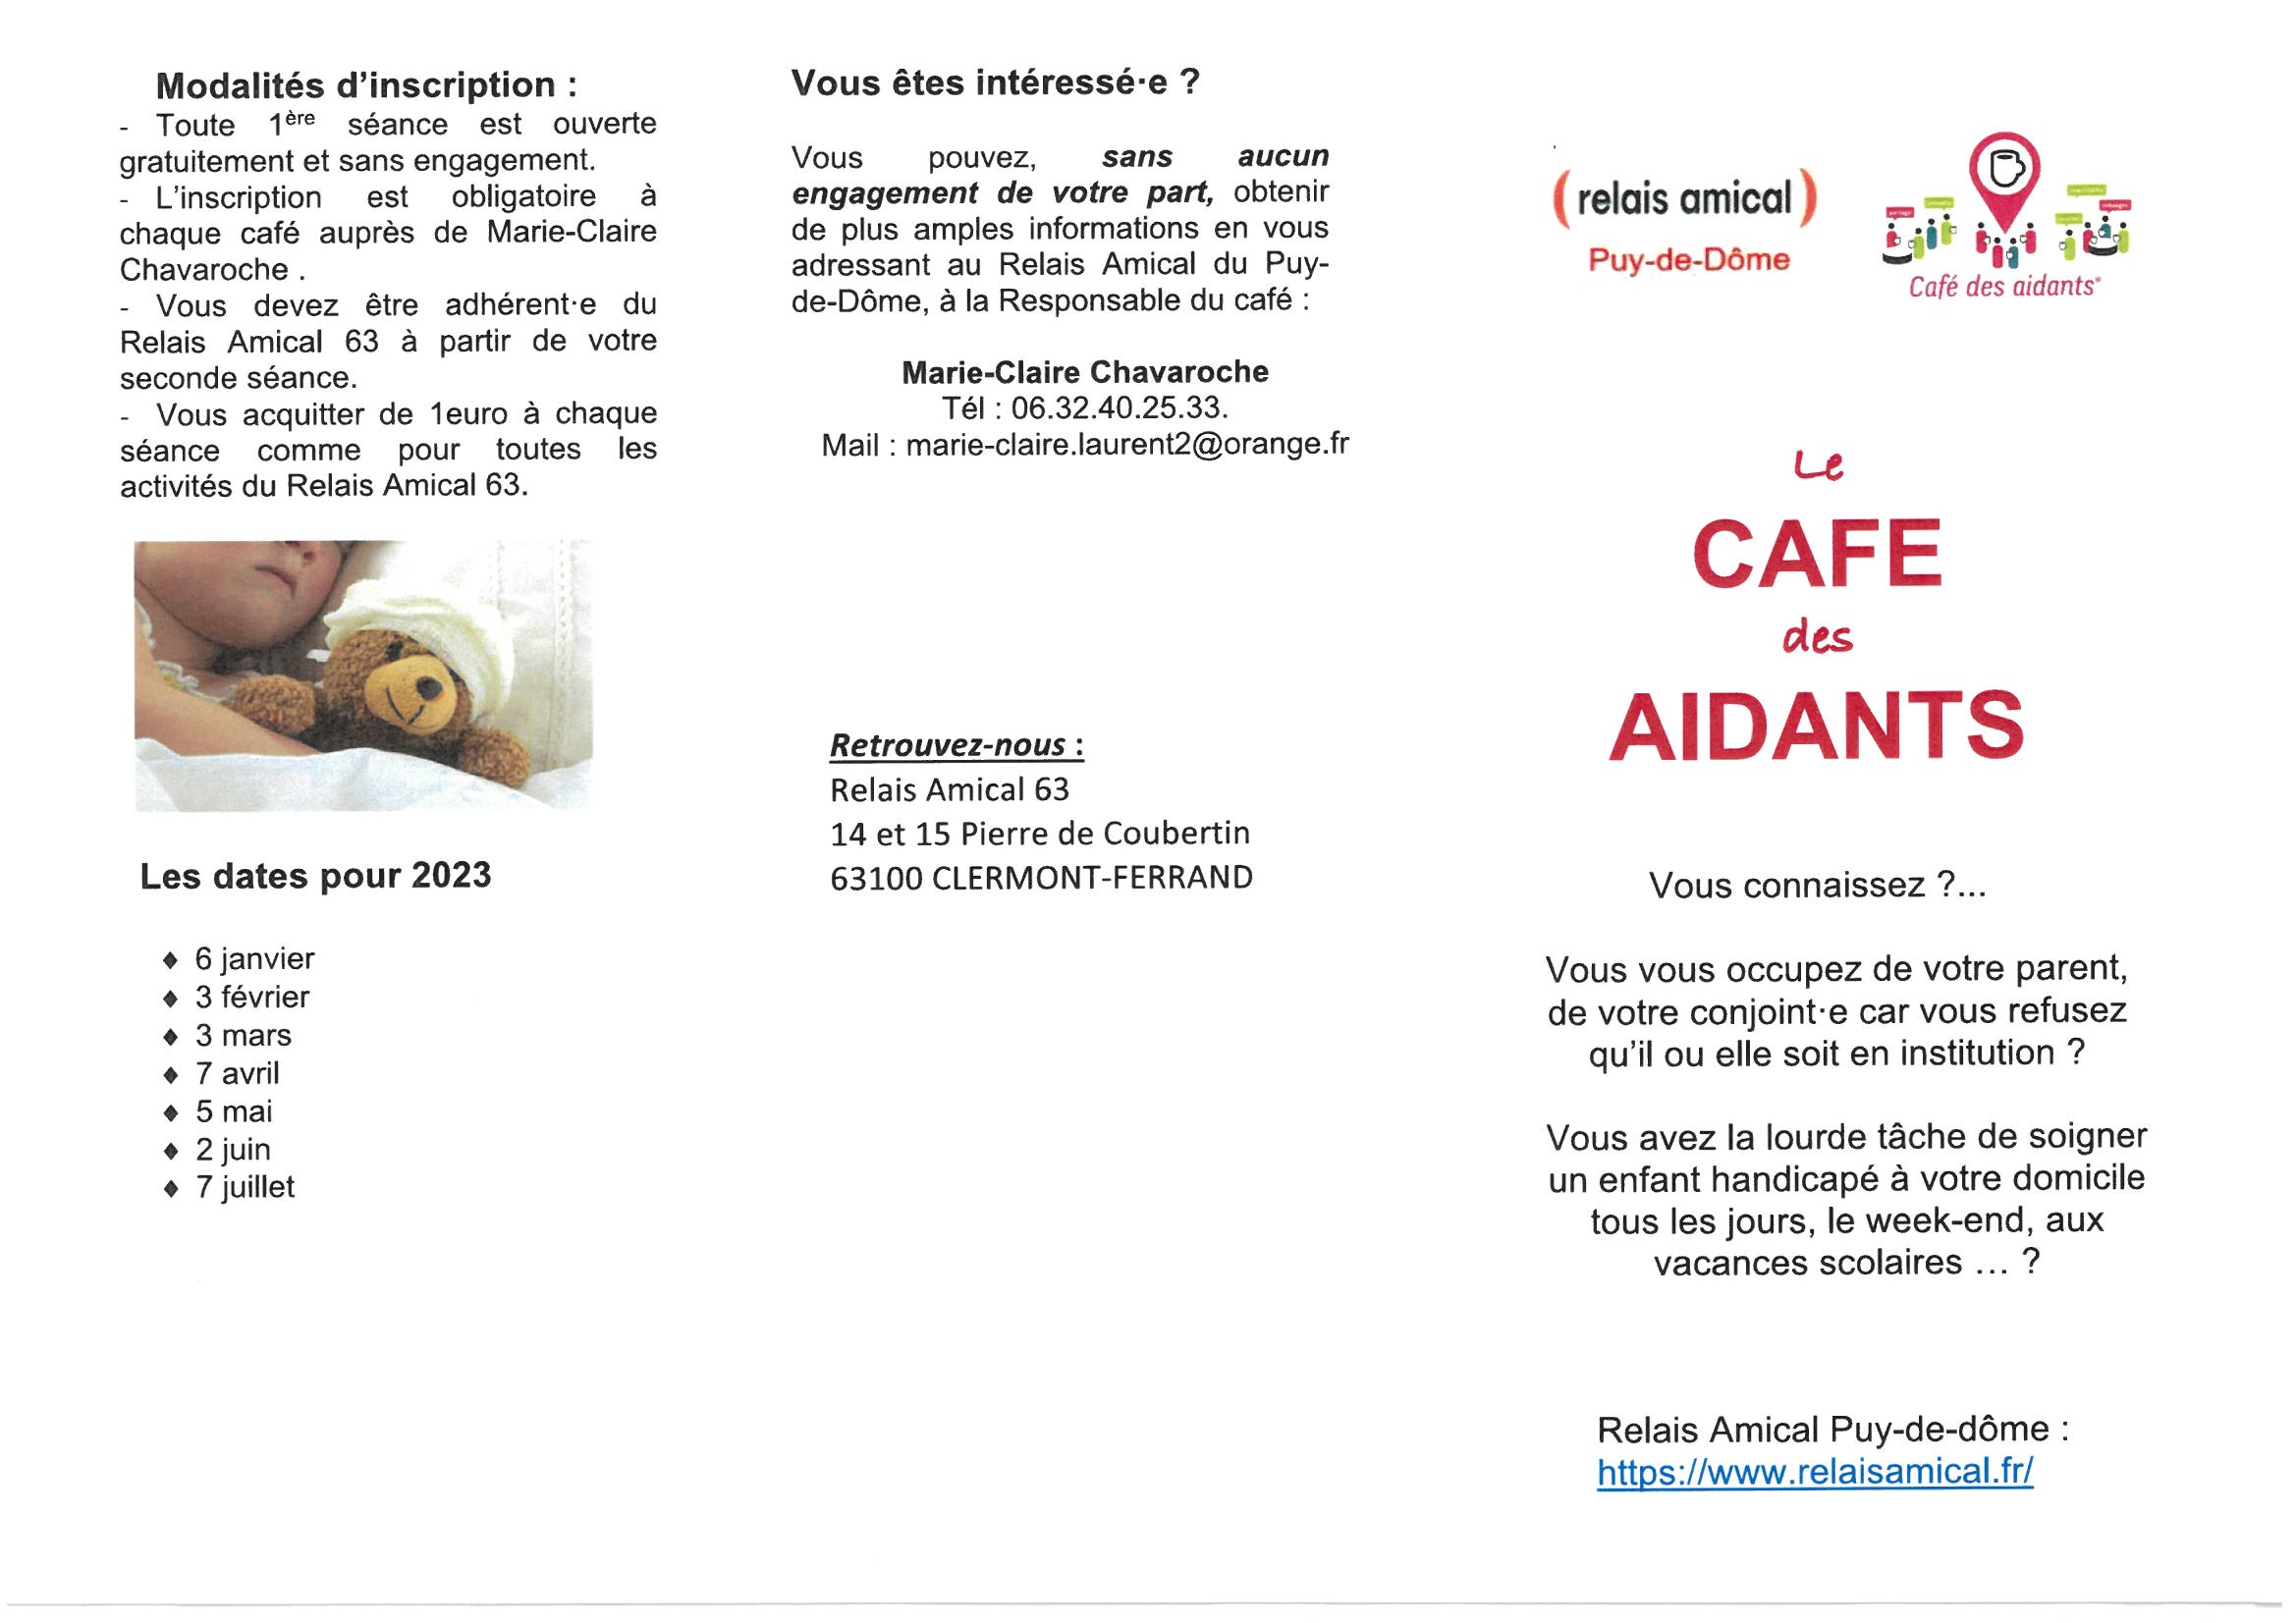 CAFE DES AIDANTS 1